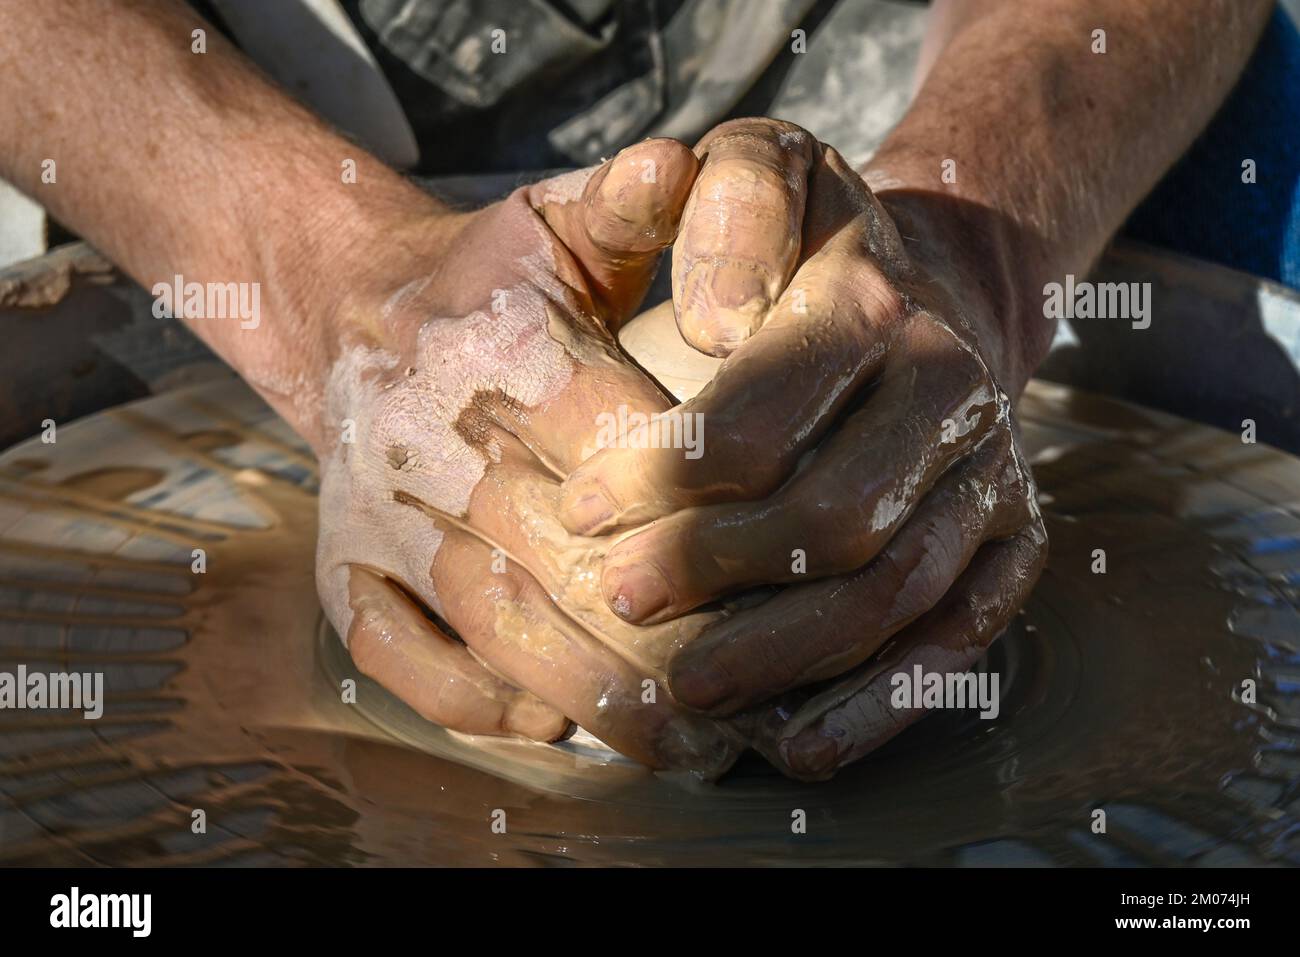 Eine Nahaufnahme von zwei nassen Händen, die bei einer Demonstration auf einer Kunstmesse in Tucson, Arizona, eine Tonkegel zu einer Schüssel auf einem Töpferrad Formen Stockfoto